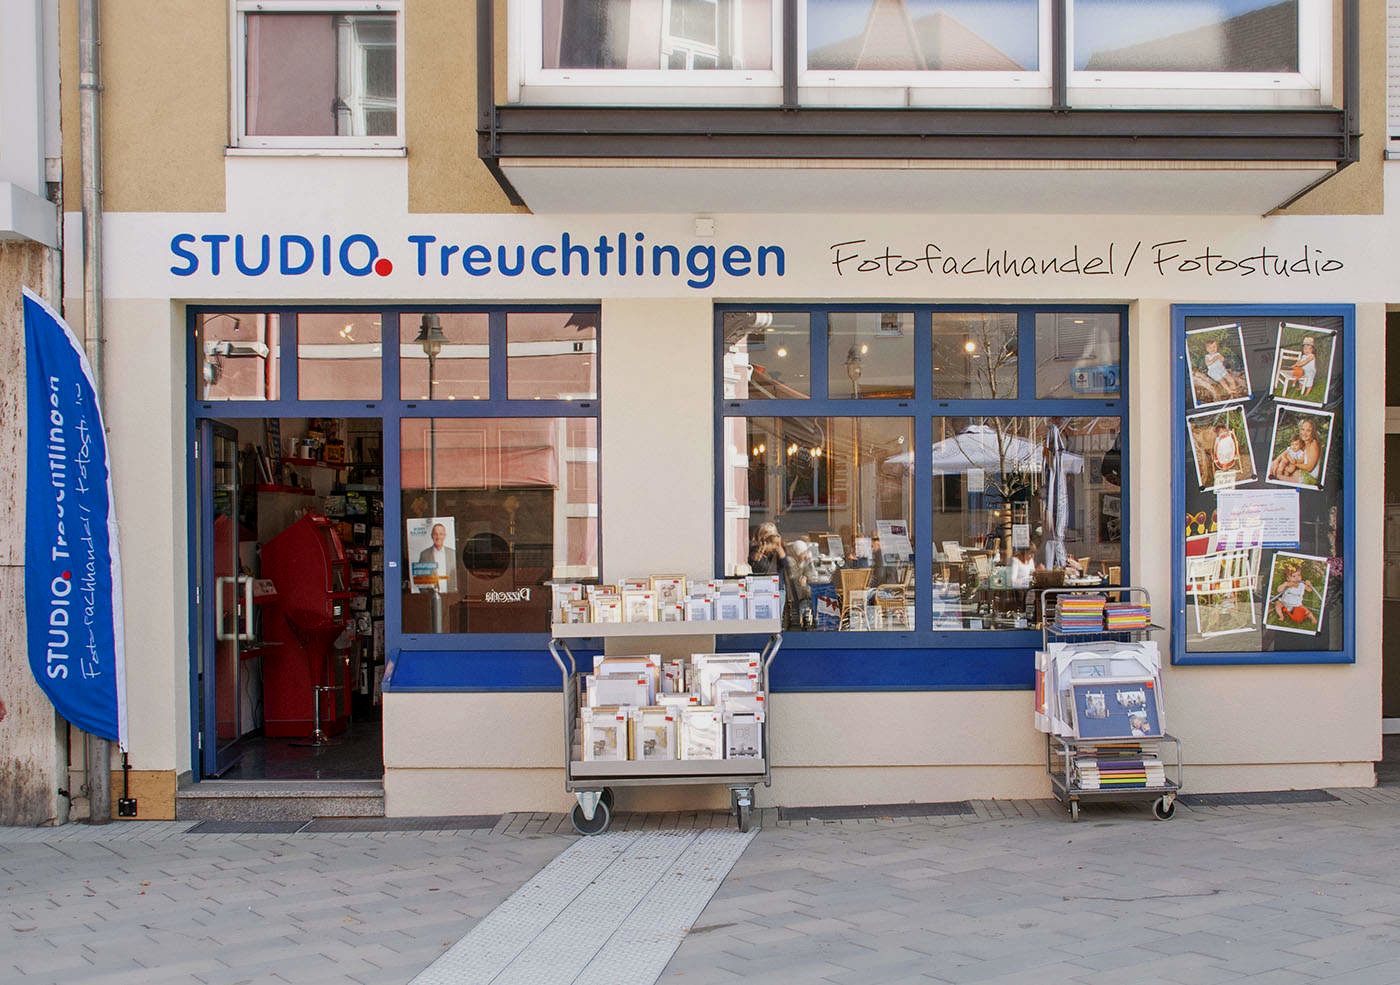 Studio Treuchtlingen/Fotostudio Treuchtlingen